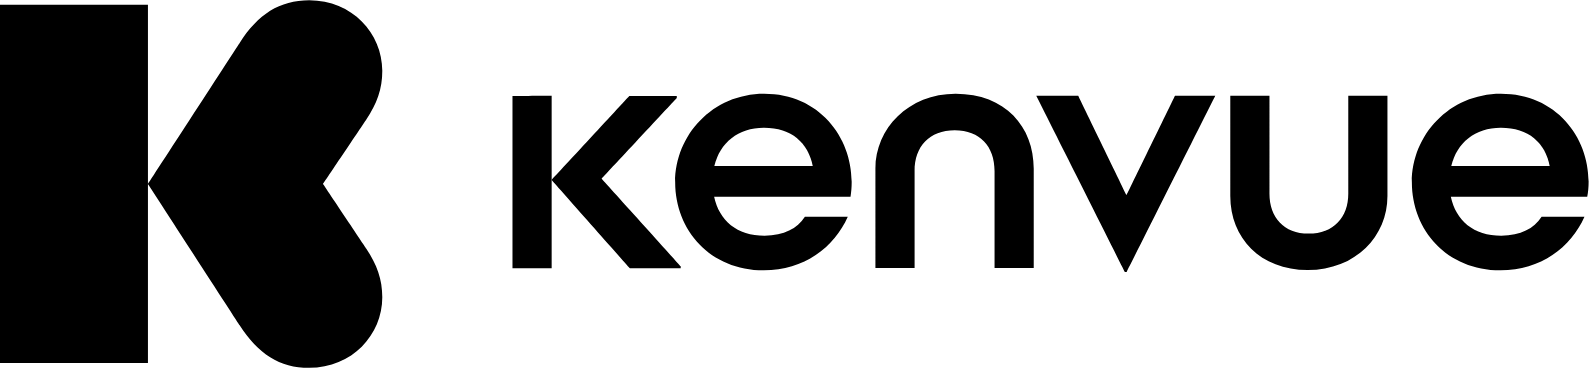 Kenvue logo large (transparent PNG)